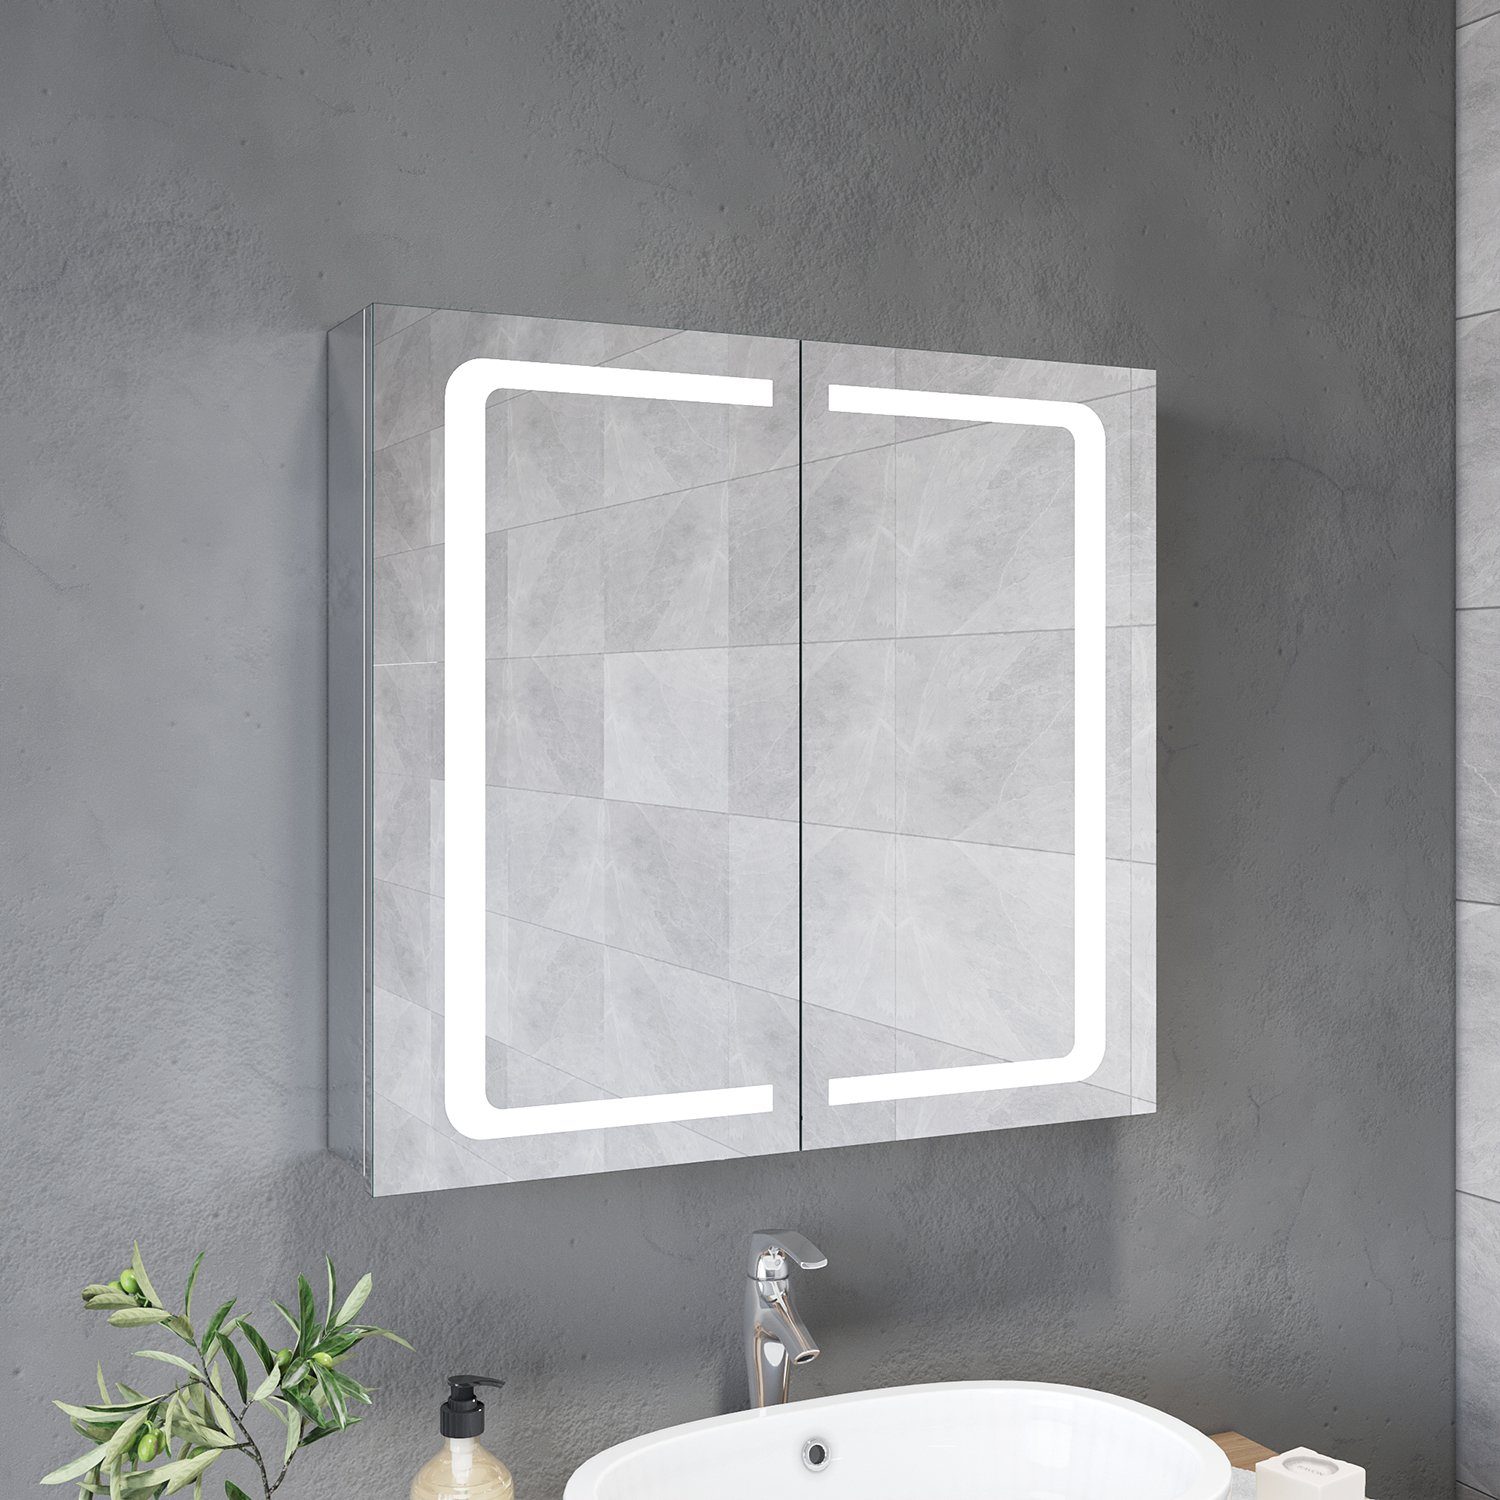 SONNI Badezimmerspiegelschrank Spiegelschrank 2-türig Bad LED Beleuchtung Badspiegel 70cm Breite Steckdose, Badschrank, Badezimmerspiegelschrank | Spiegelschränke